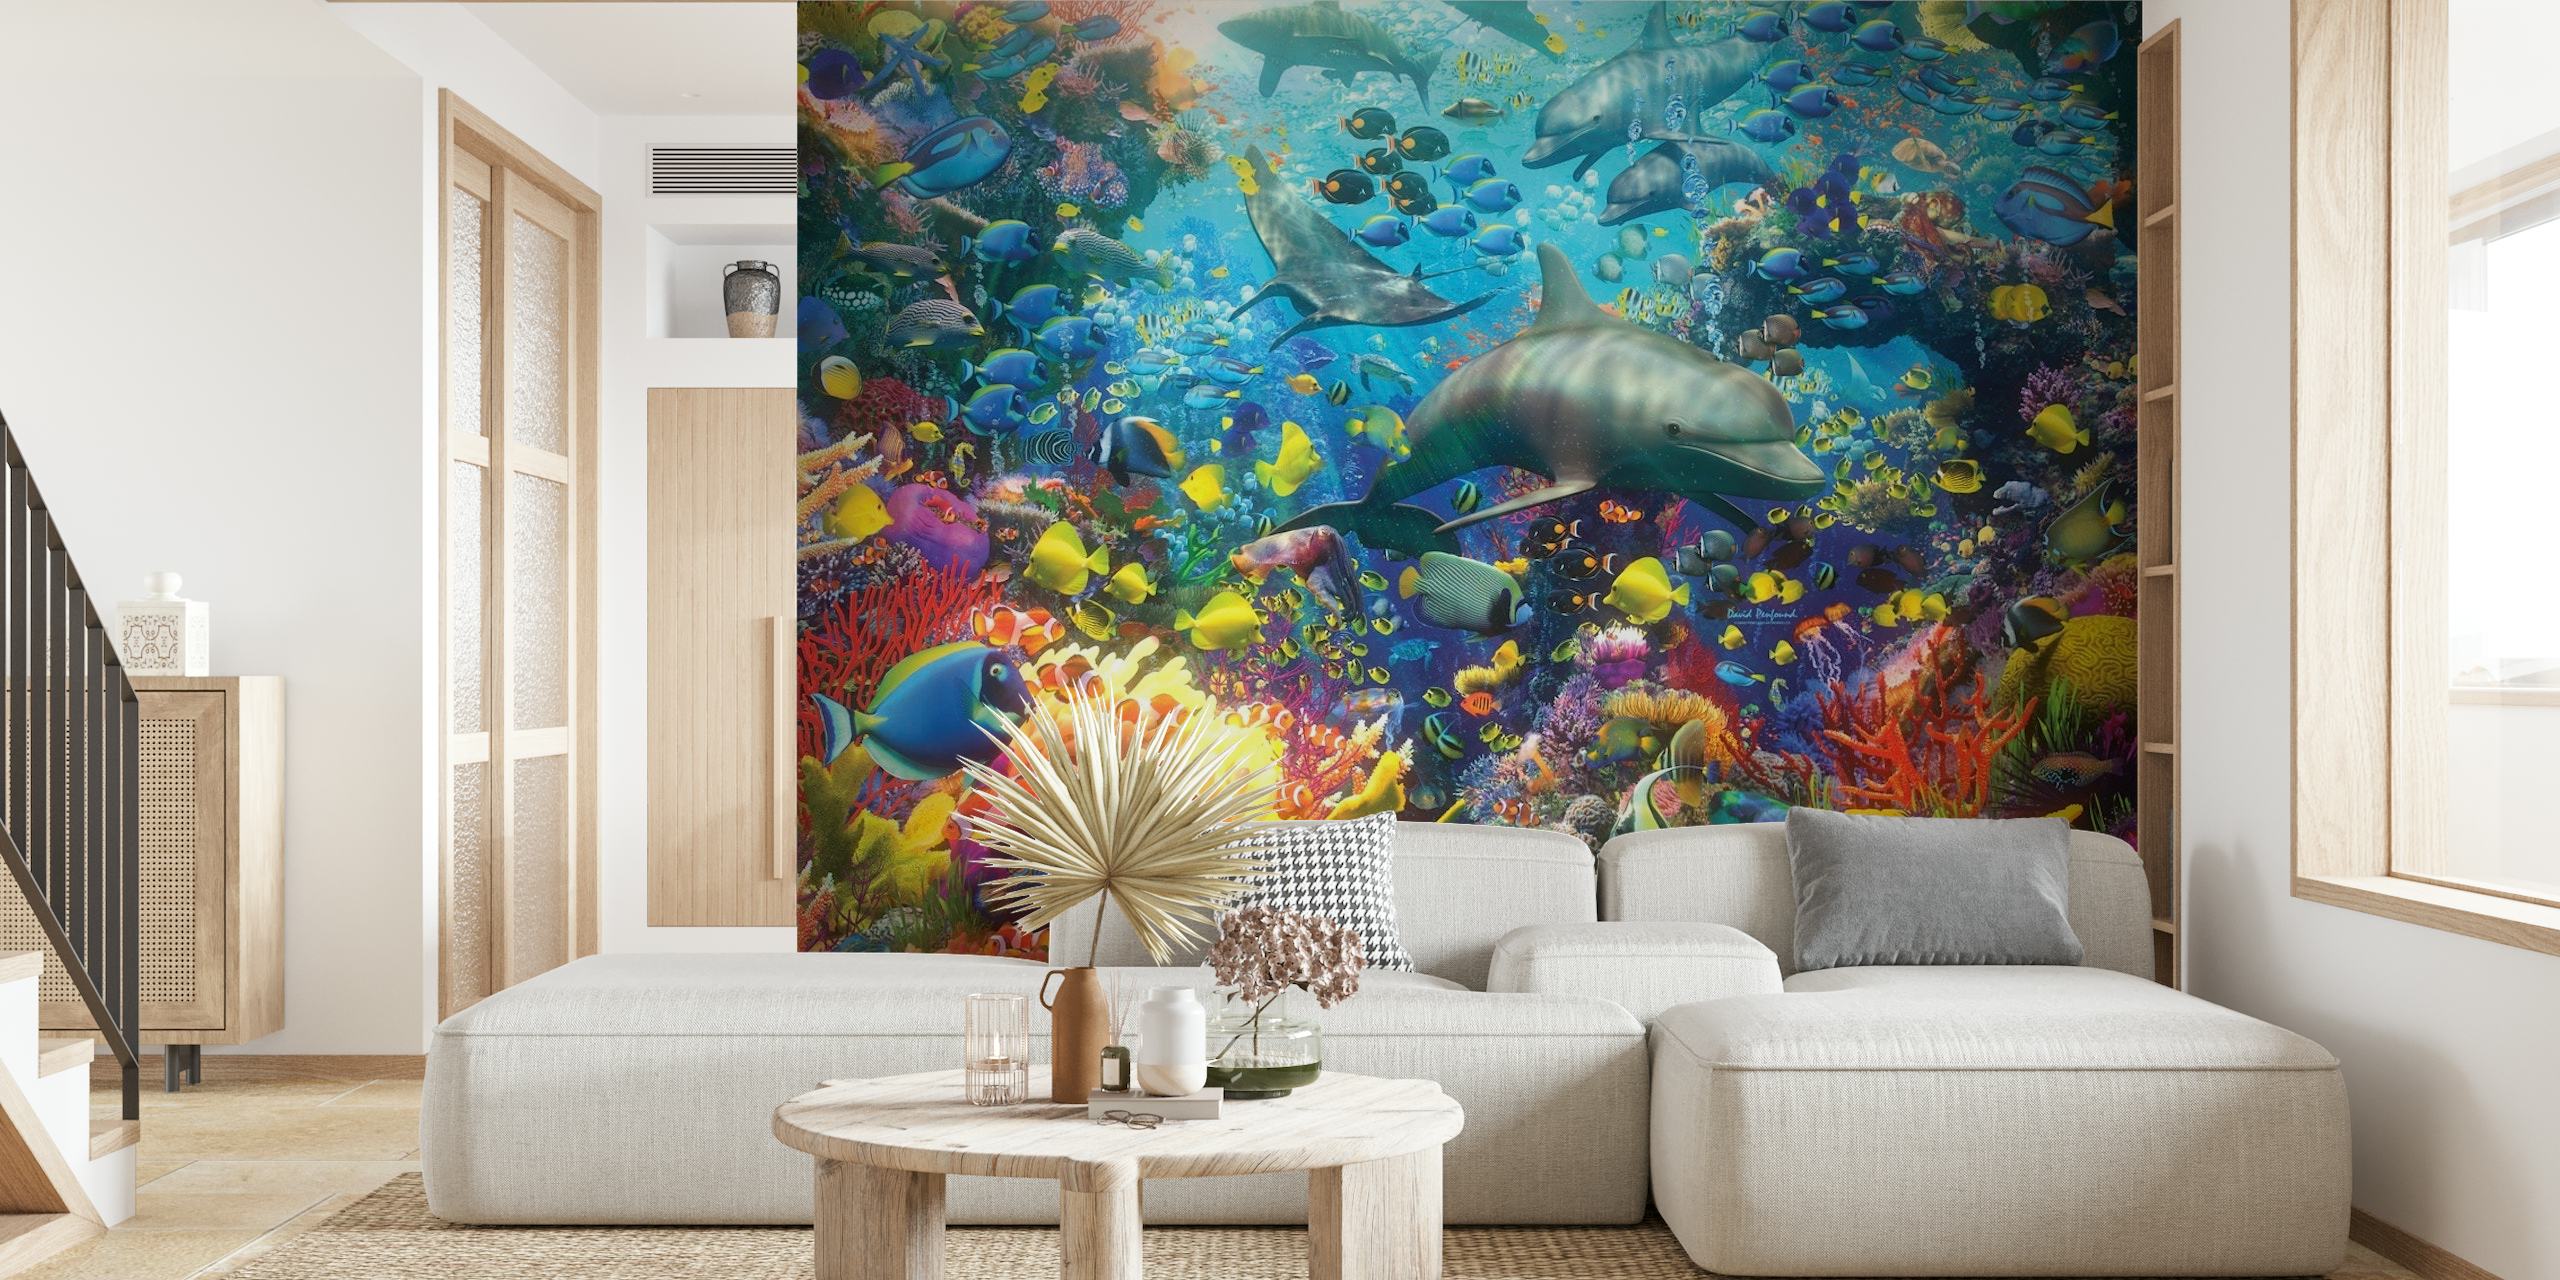 Colorida escena submarina con arrecifes de coral, peces tropicales y un tiburón, para el mural 'El Mar Rojo'.